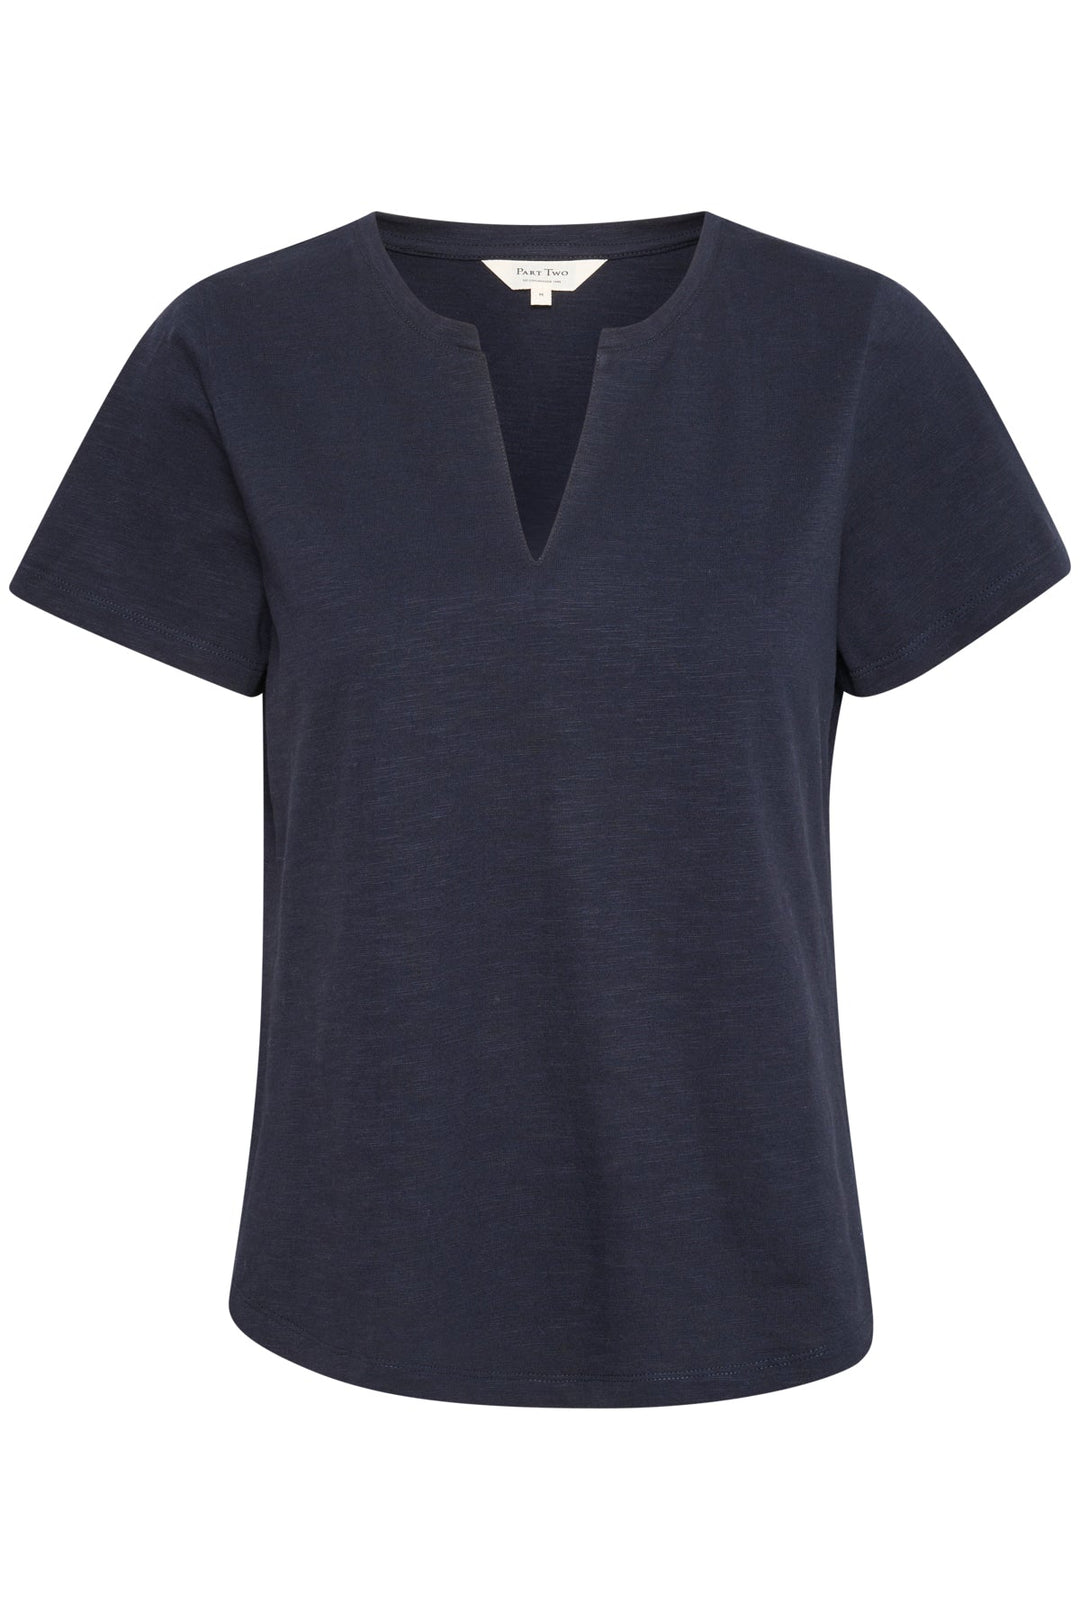 Gesinaspw T-Shirt Dark Navy | Skjorter og bluser | Smuk - Dameklær på nett